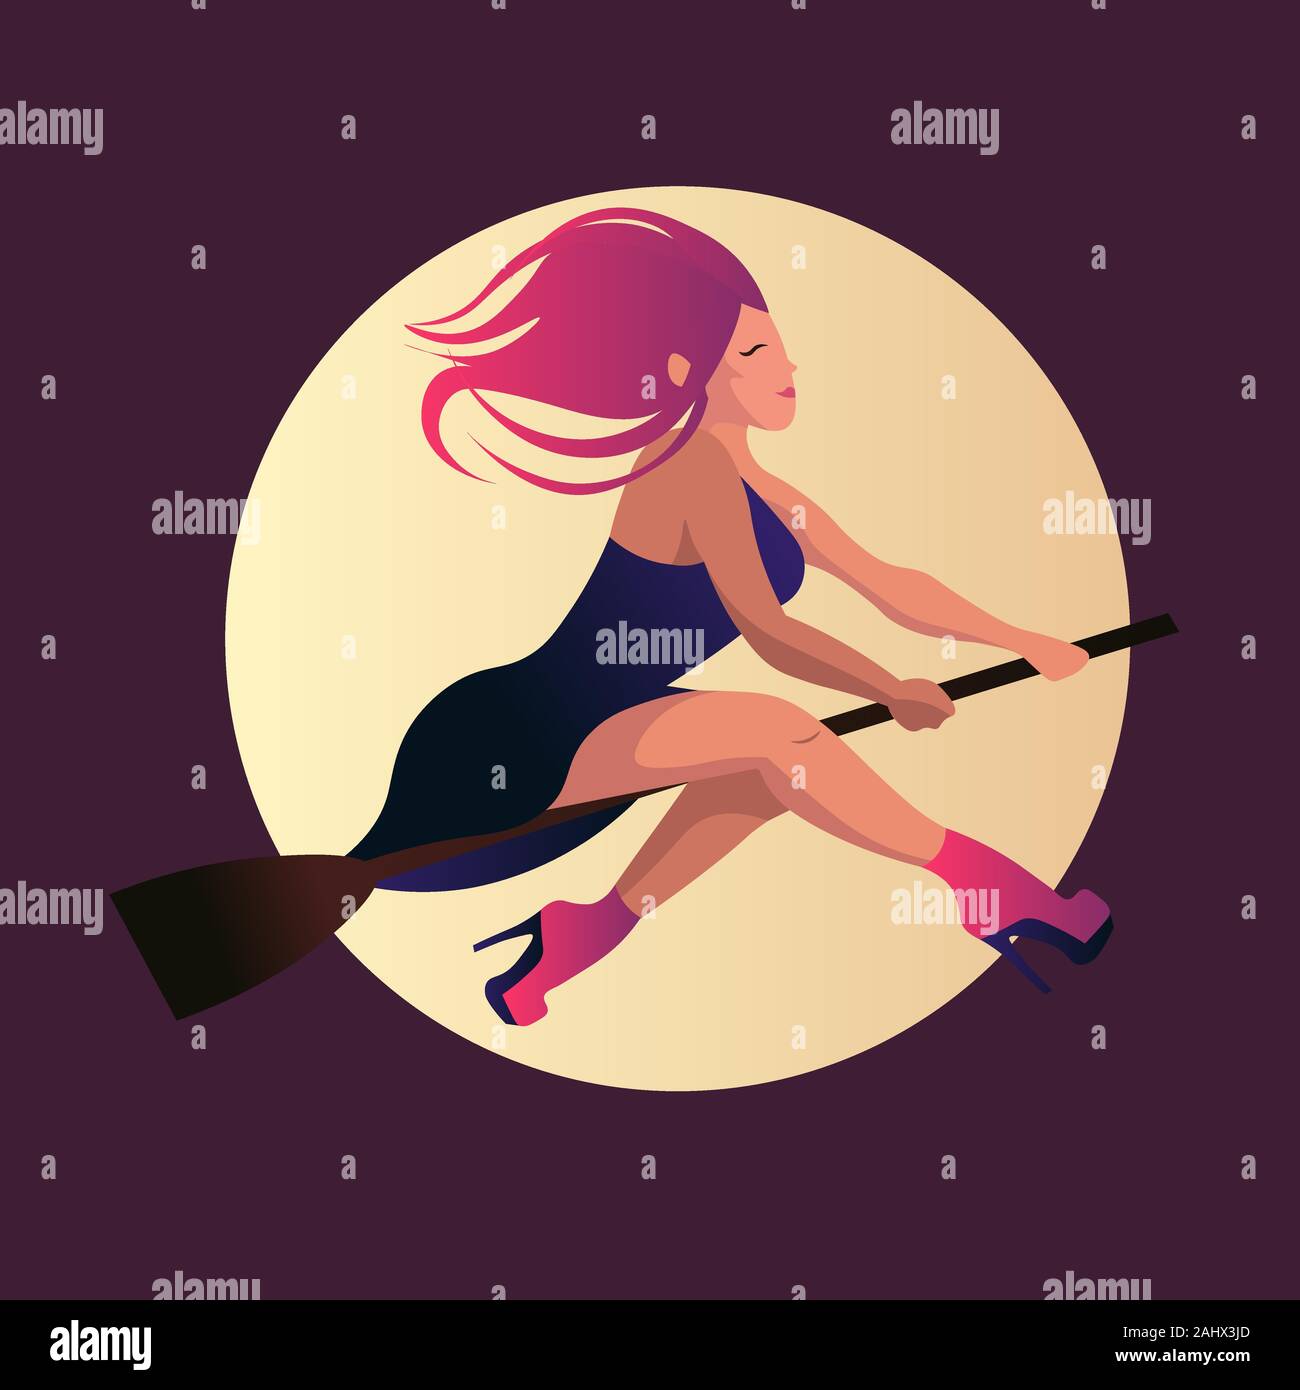 Giovane strega con capelli selvaggi e tacchi alti battenti sotto la luce della luna. Illustrazione piatta di una donna con scarpe di colore rosa e viola abito. Illustrazione Vettoriale